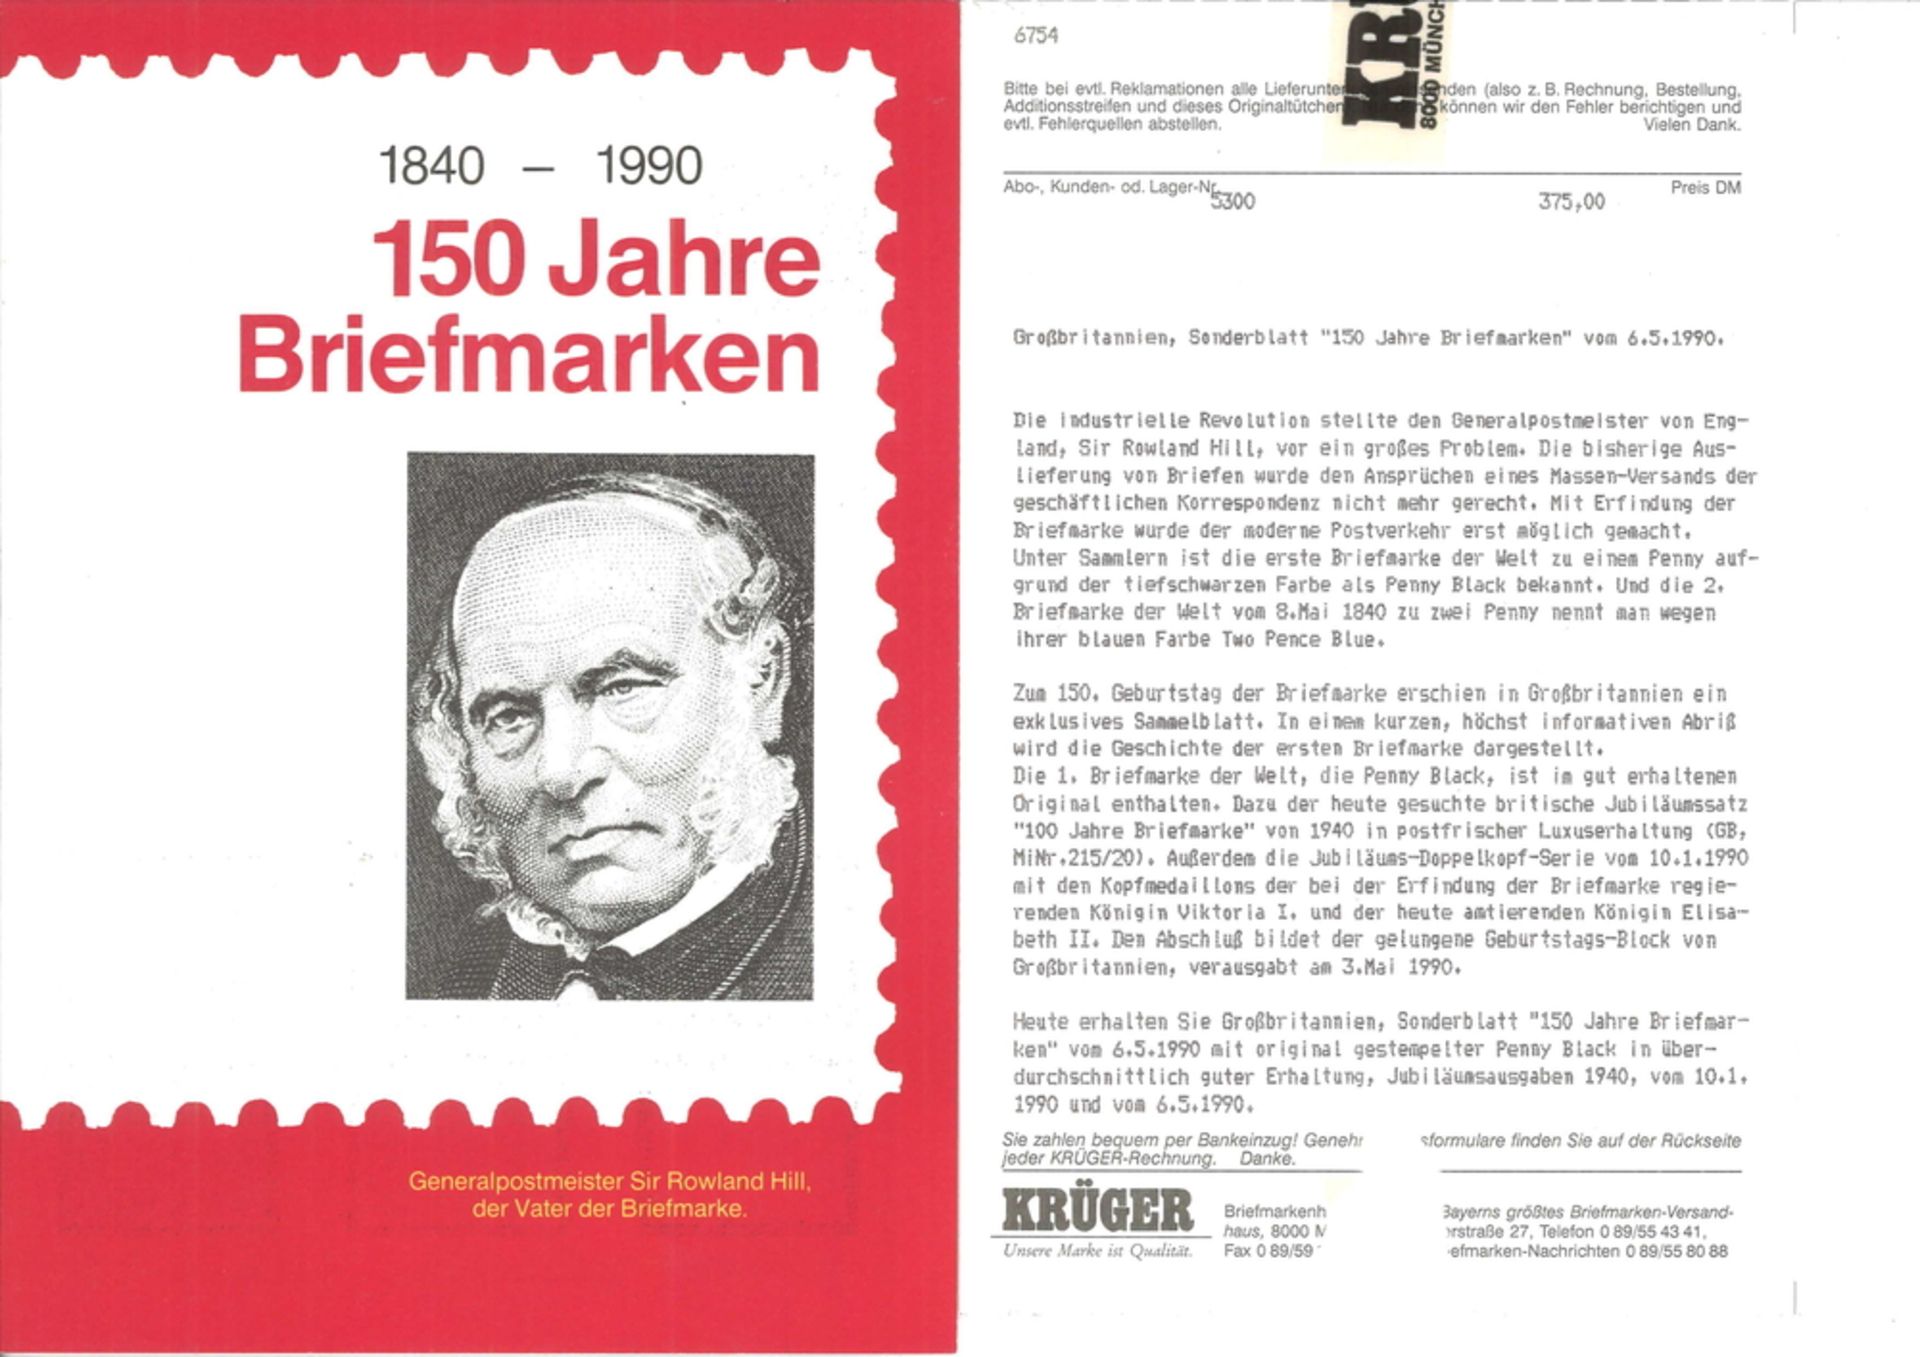 Großbritannien, Sonderblatt "150 Jahre Briefmarken" vom 06.05.1990" Die industr. Revolution - Bild 2 aus 2